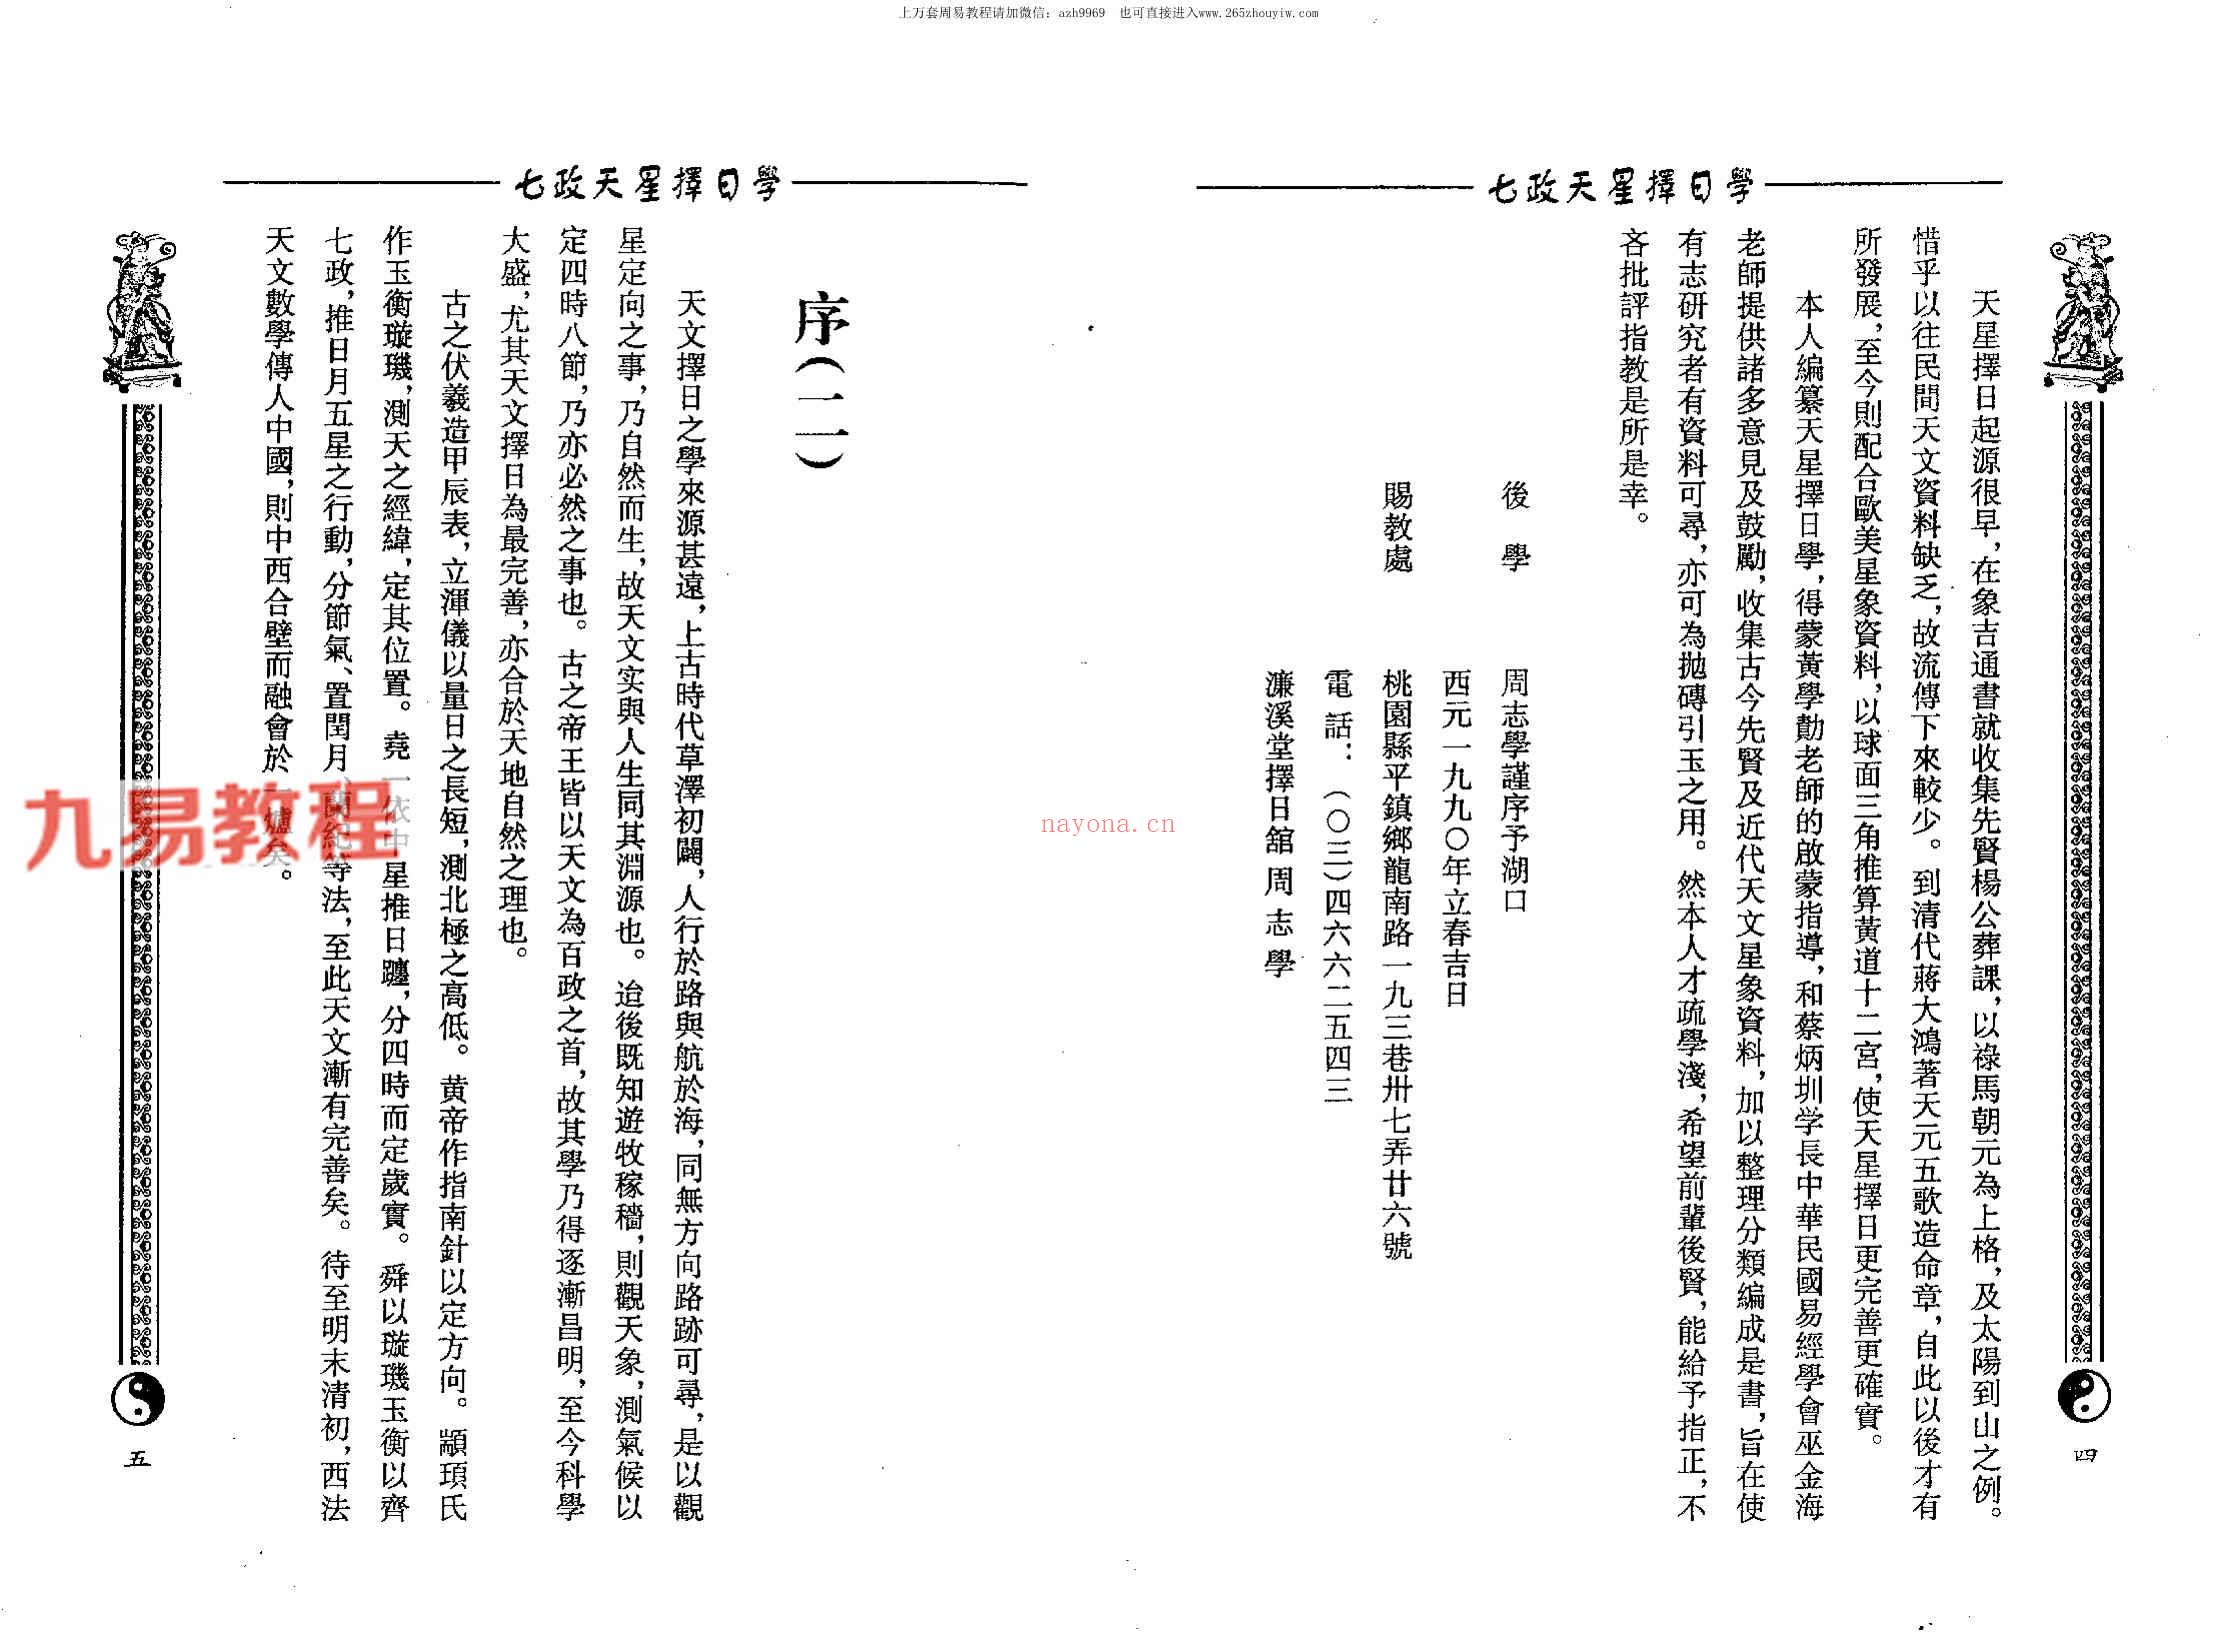 周志学-七政天星择日学（2009+2011年版）.pdf 百度云下载！(七政天星八字免费排盘)